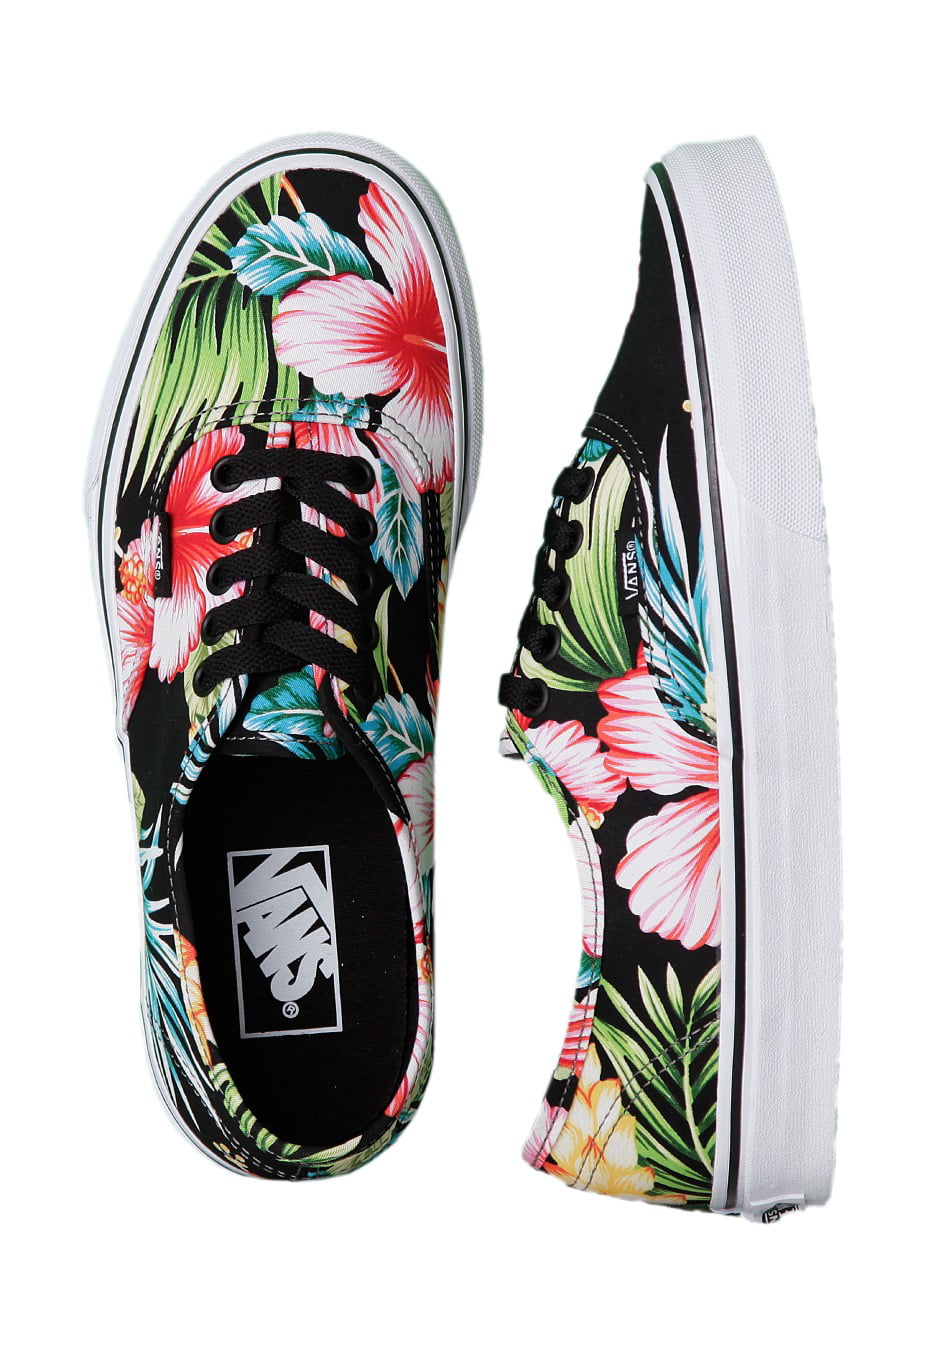 Vans Authentic Floral/Black Ankle-High Canvas Skateboarding Shoe 10M / 8.5M -